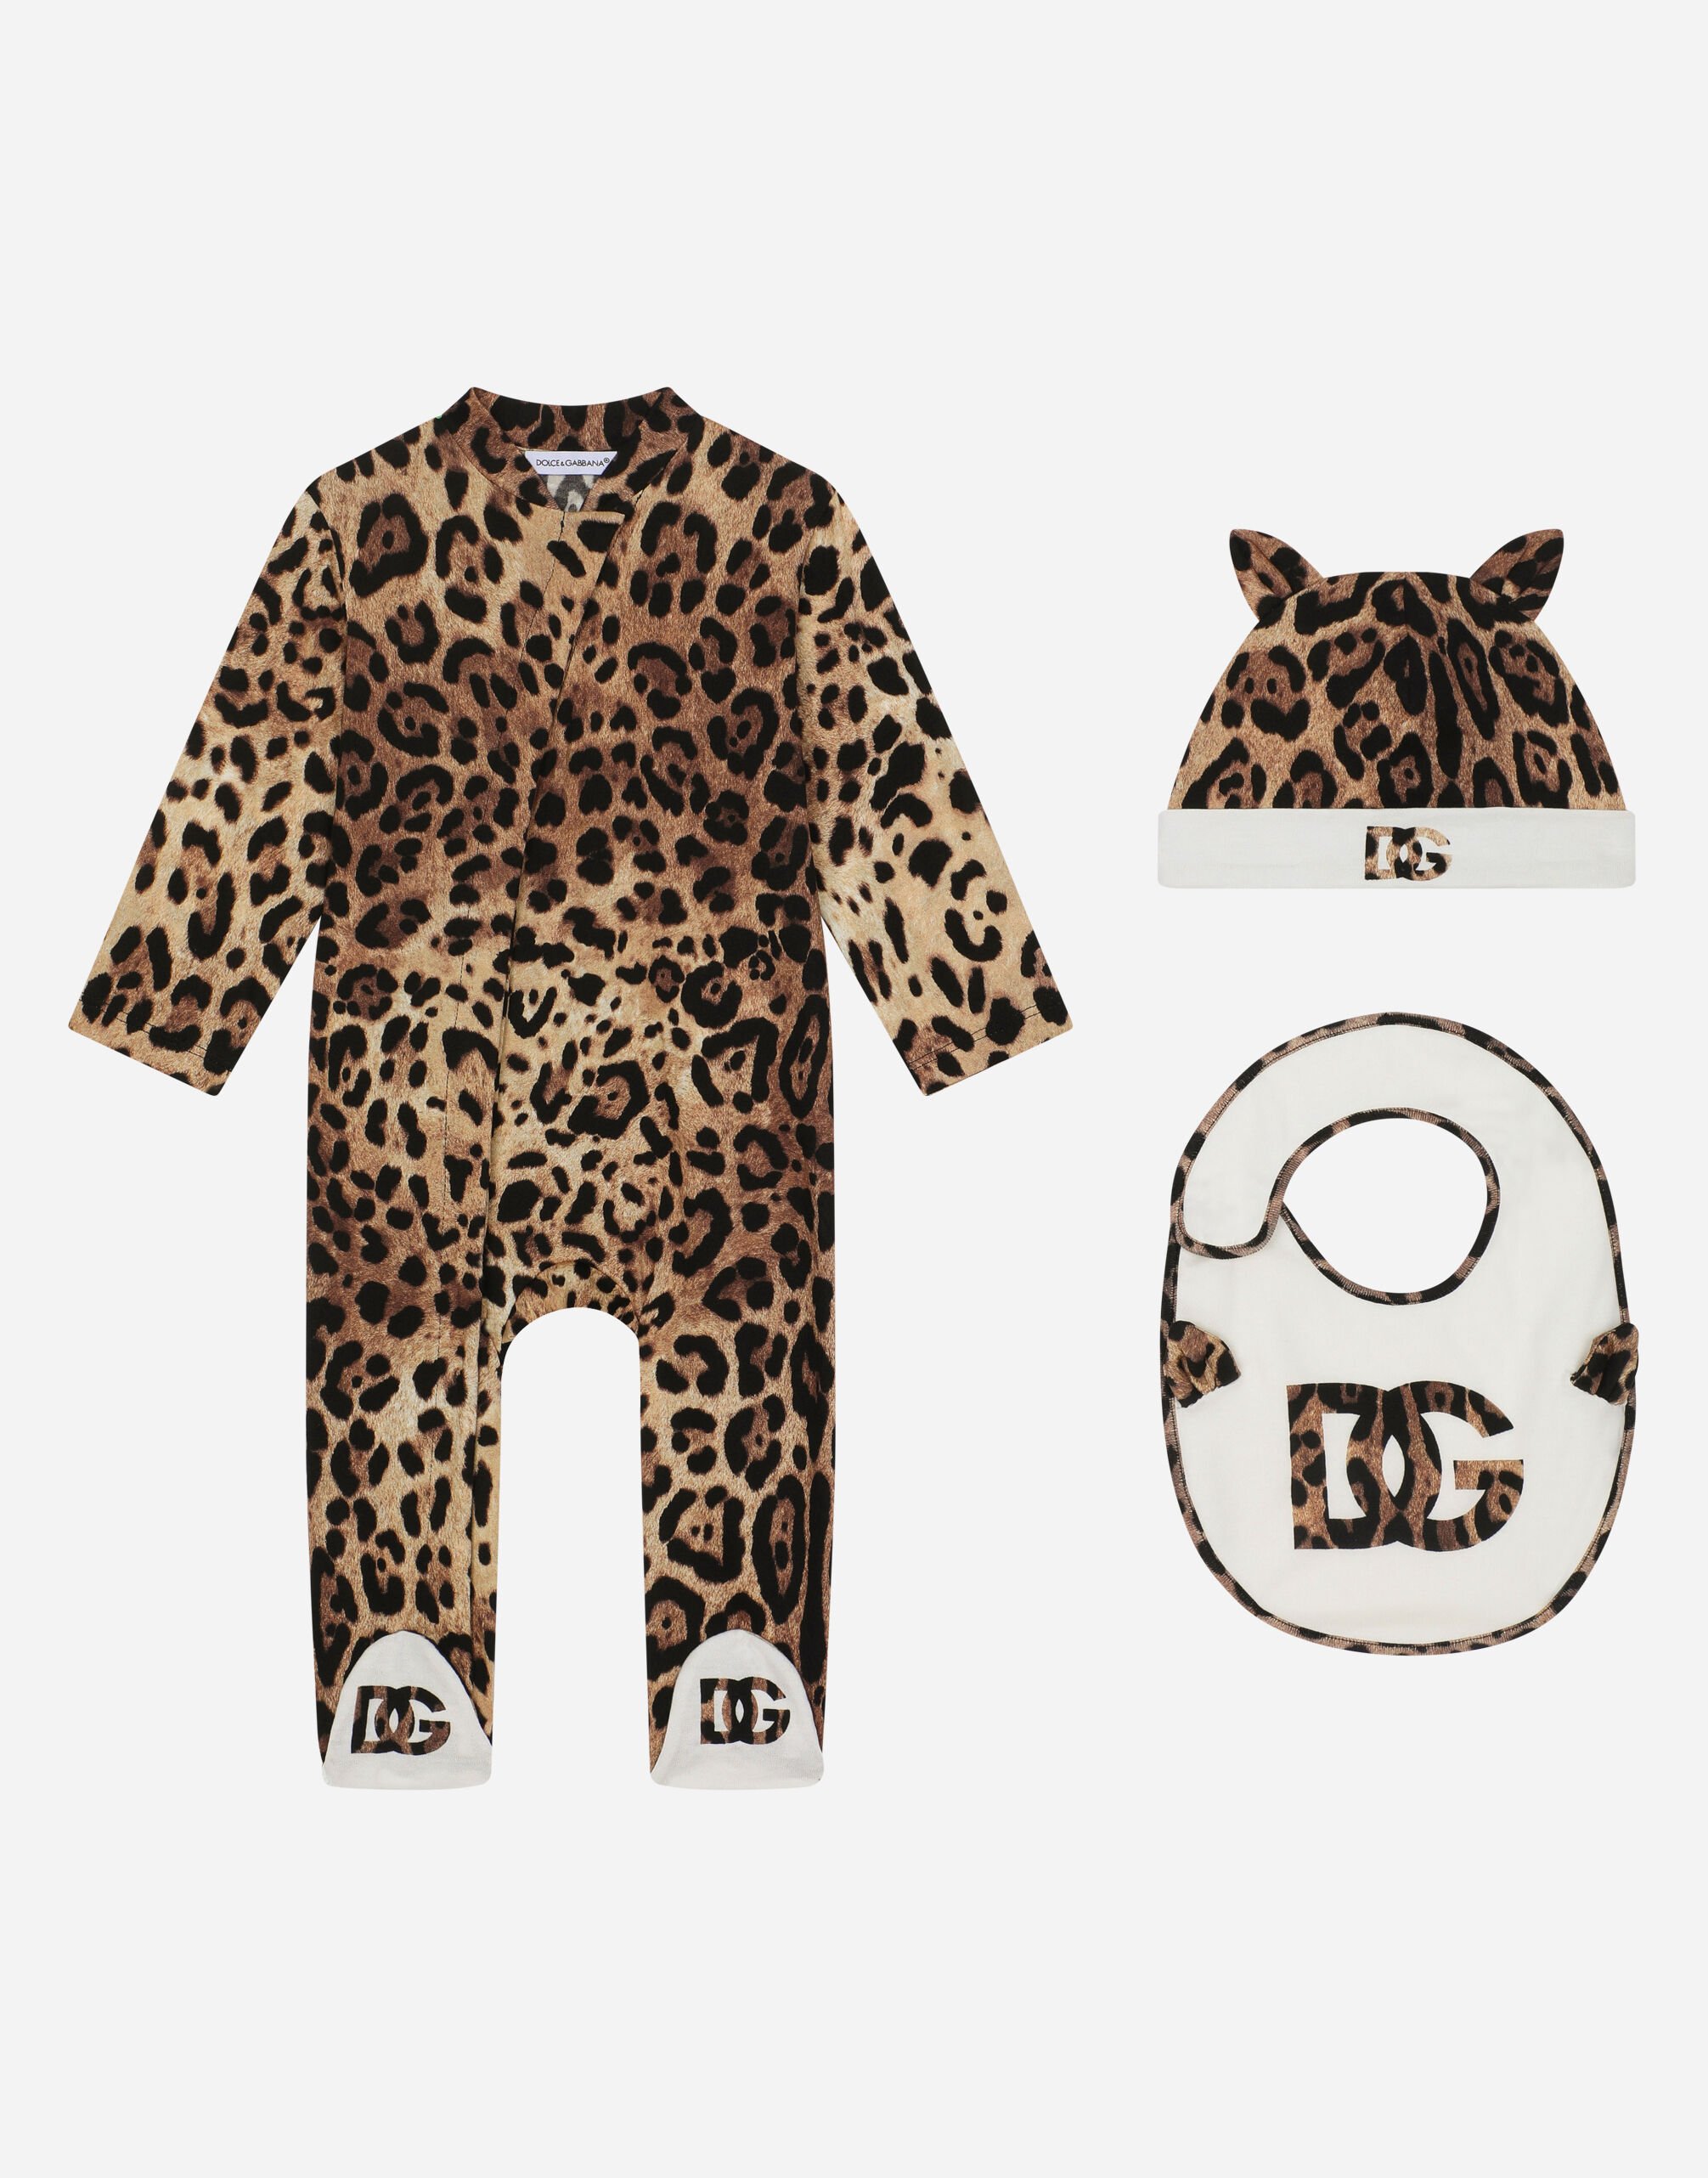 Dolce & Gabbana Set de regalo de 3 piezas en punto con estampado de leopardo Imprima L21O84G7EX8